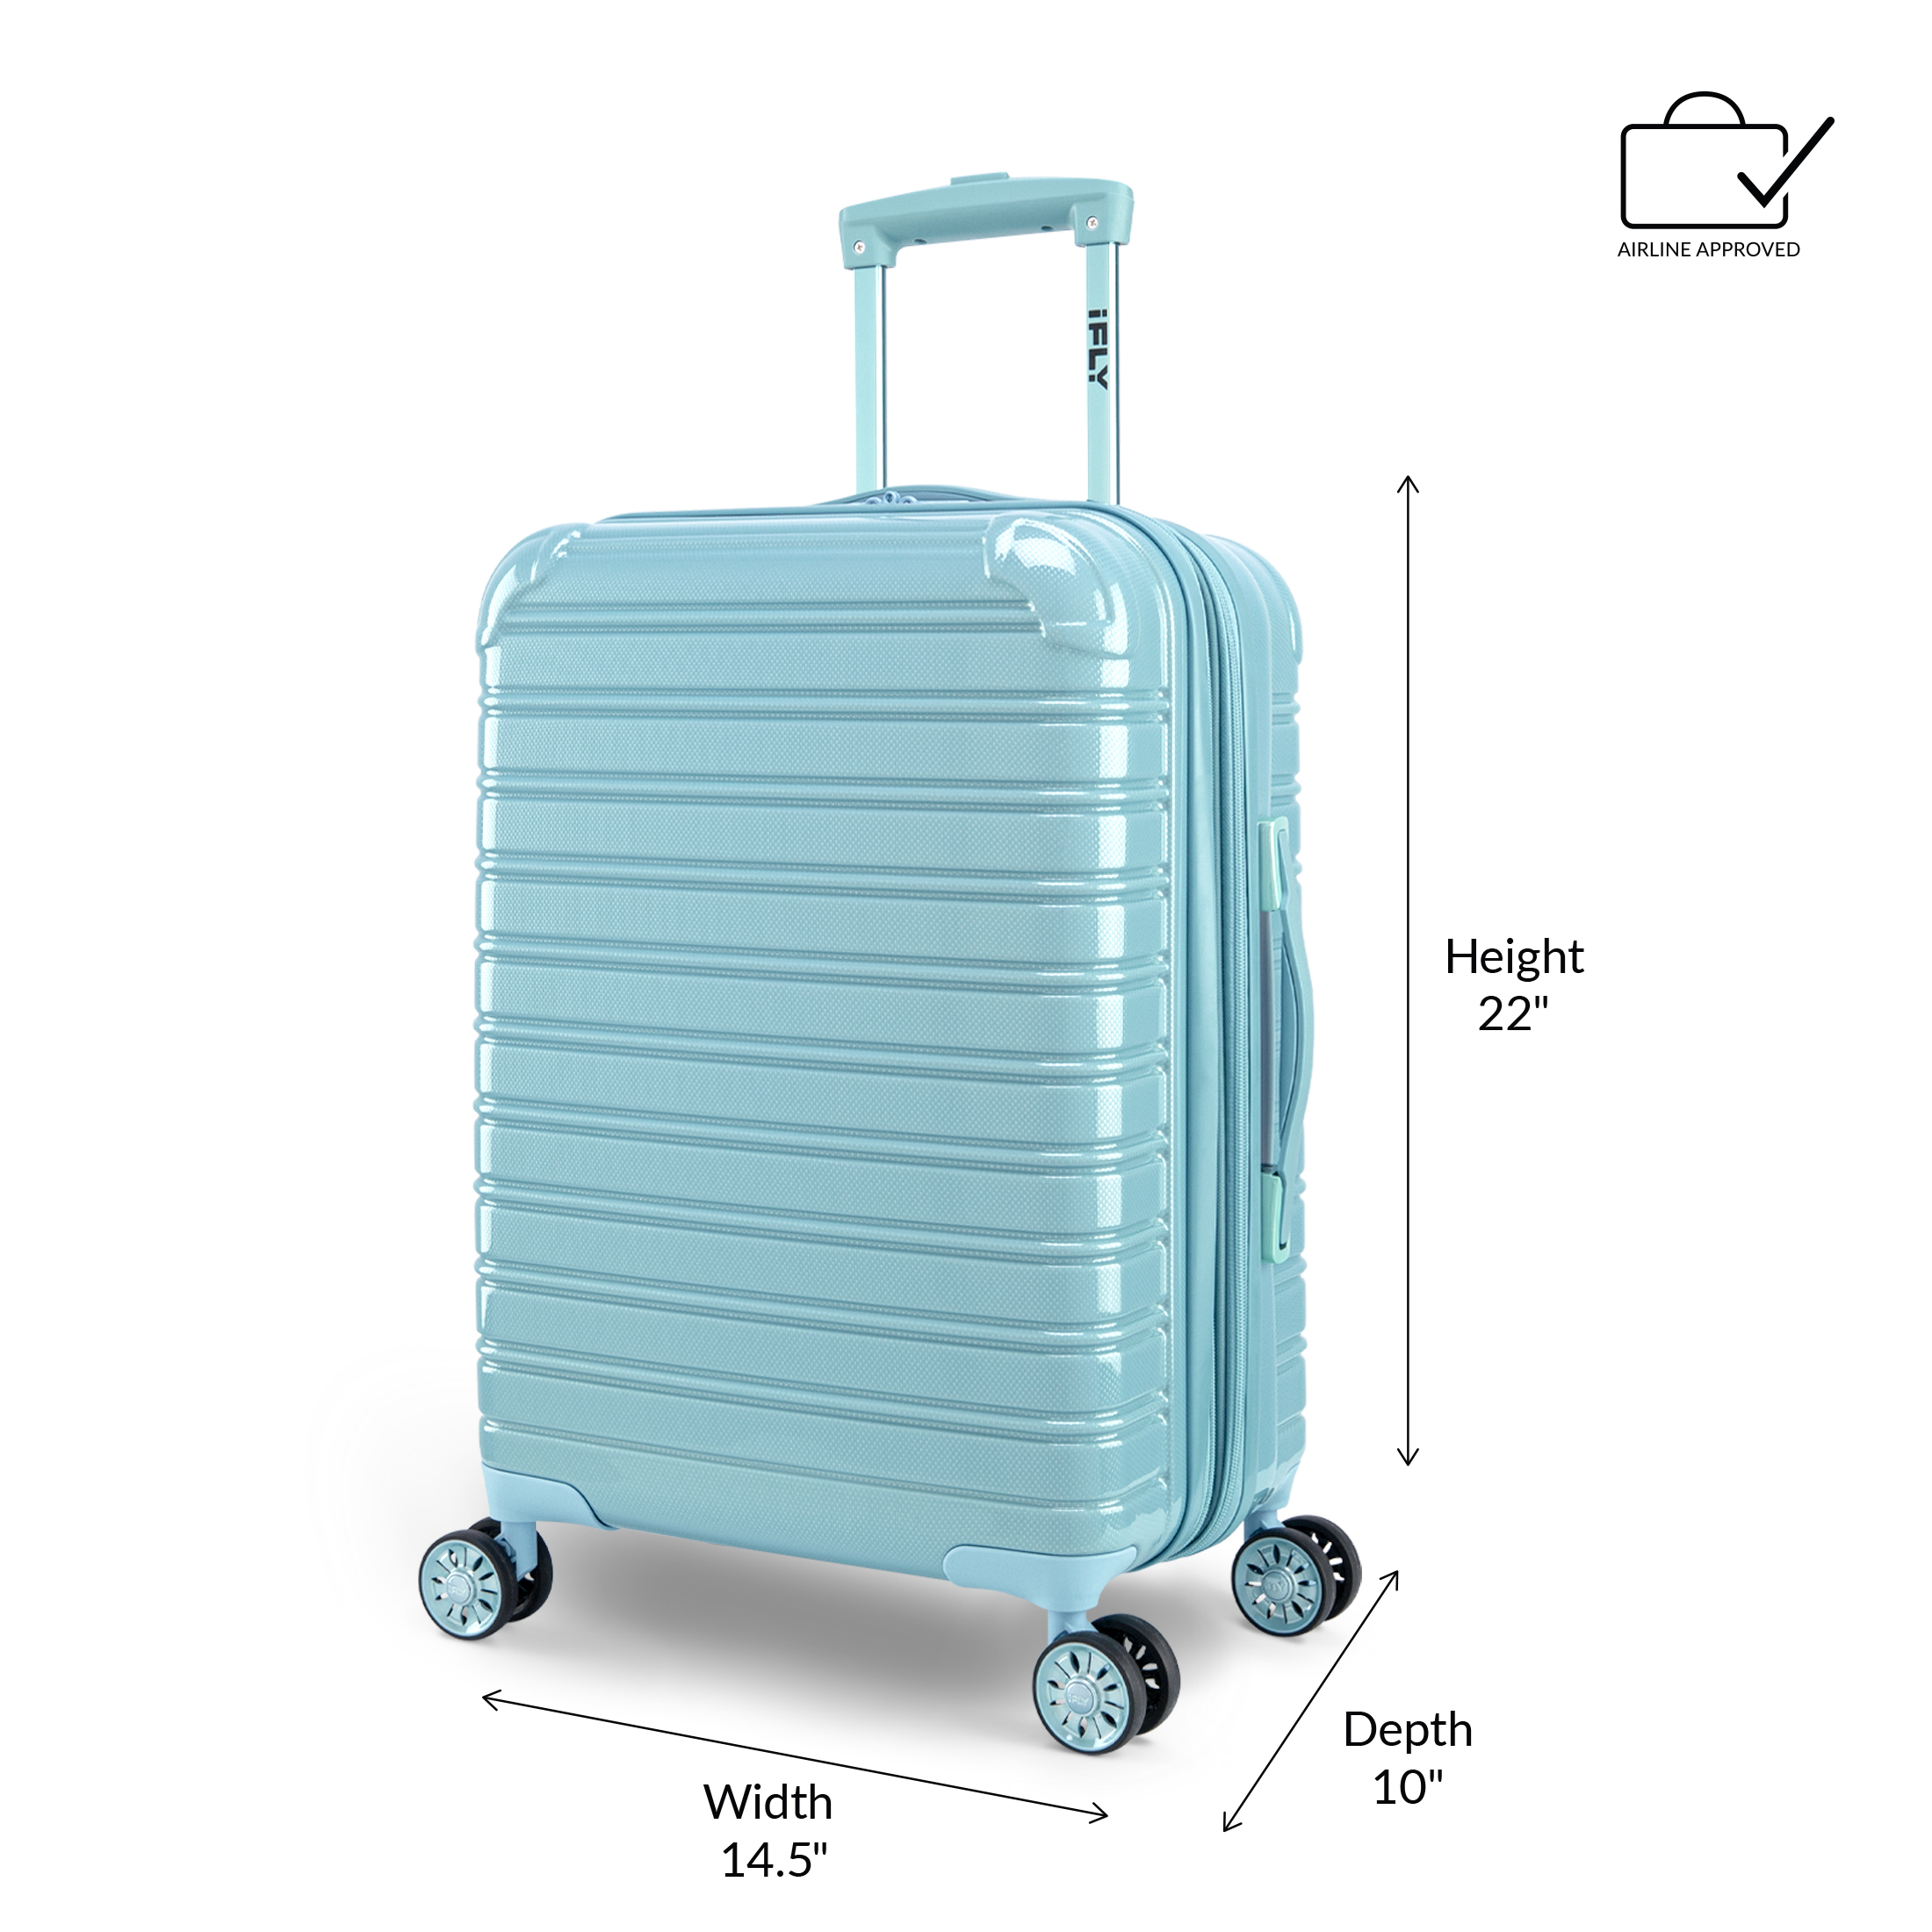 iFLY Hardside Luggage Fibertech 20", Sky - image 7 of 9